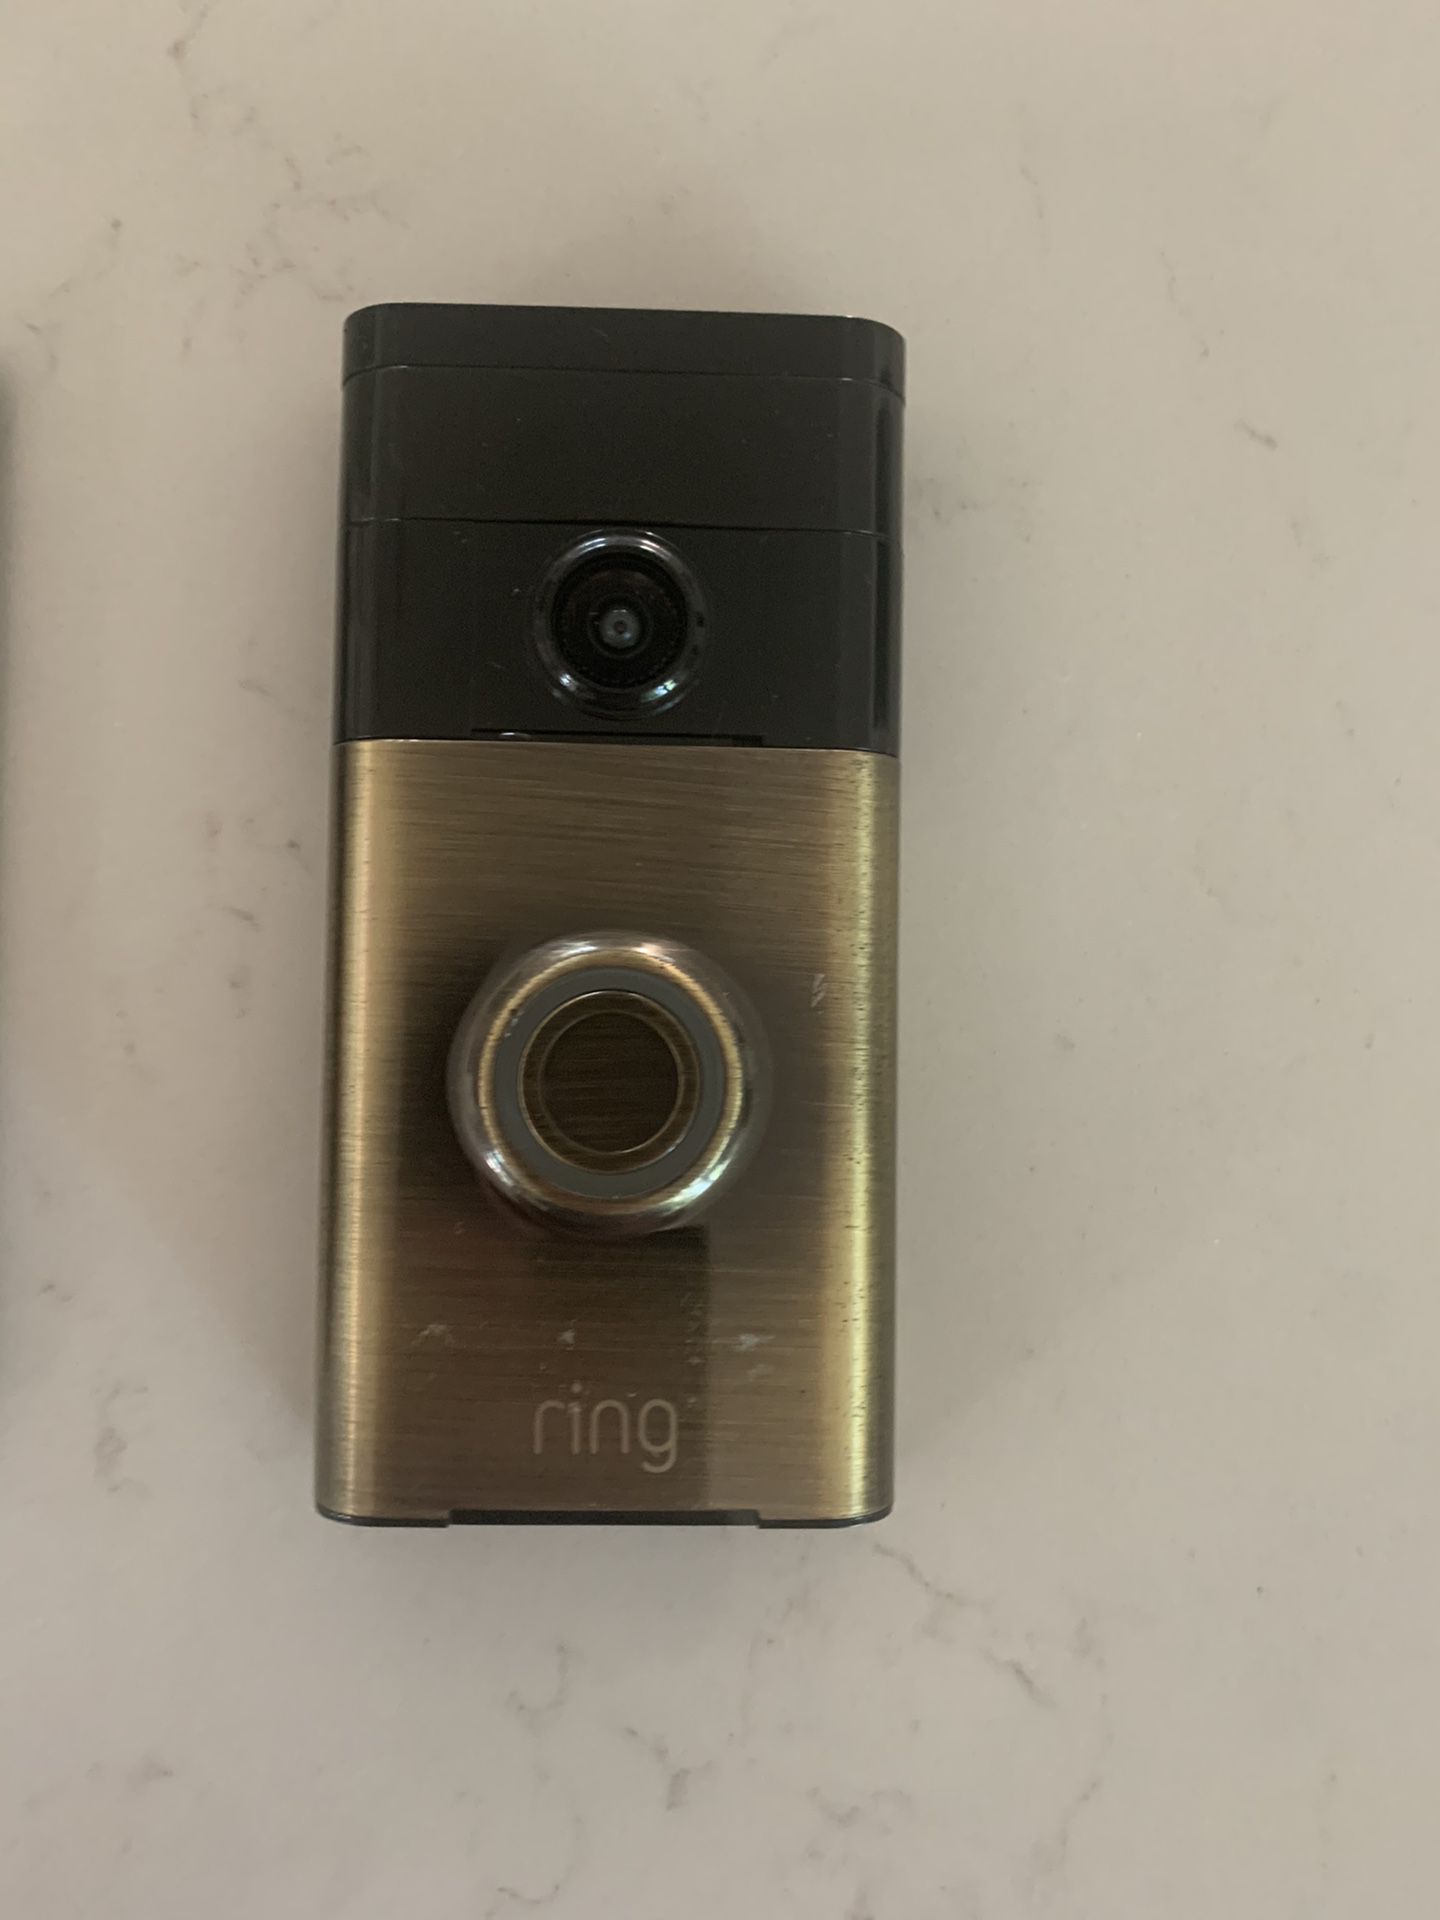 Ring Doorbell (Gen 1)